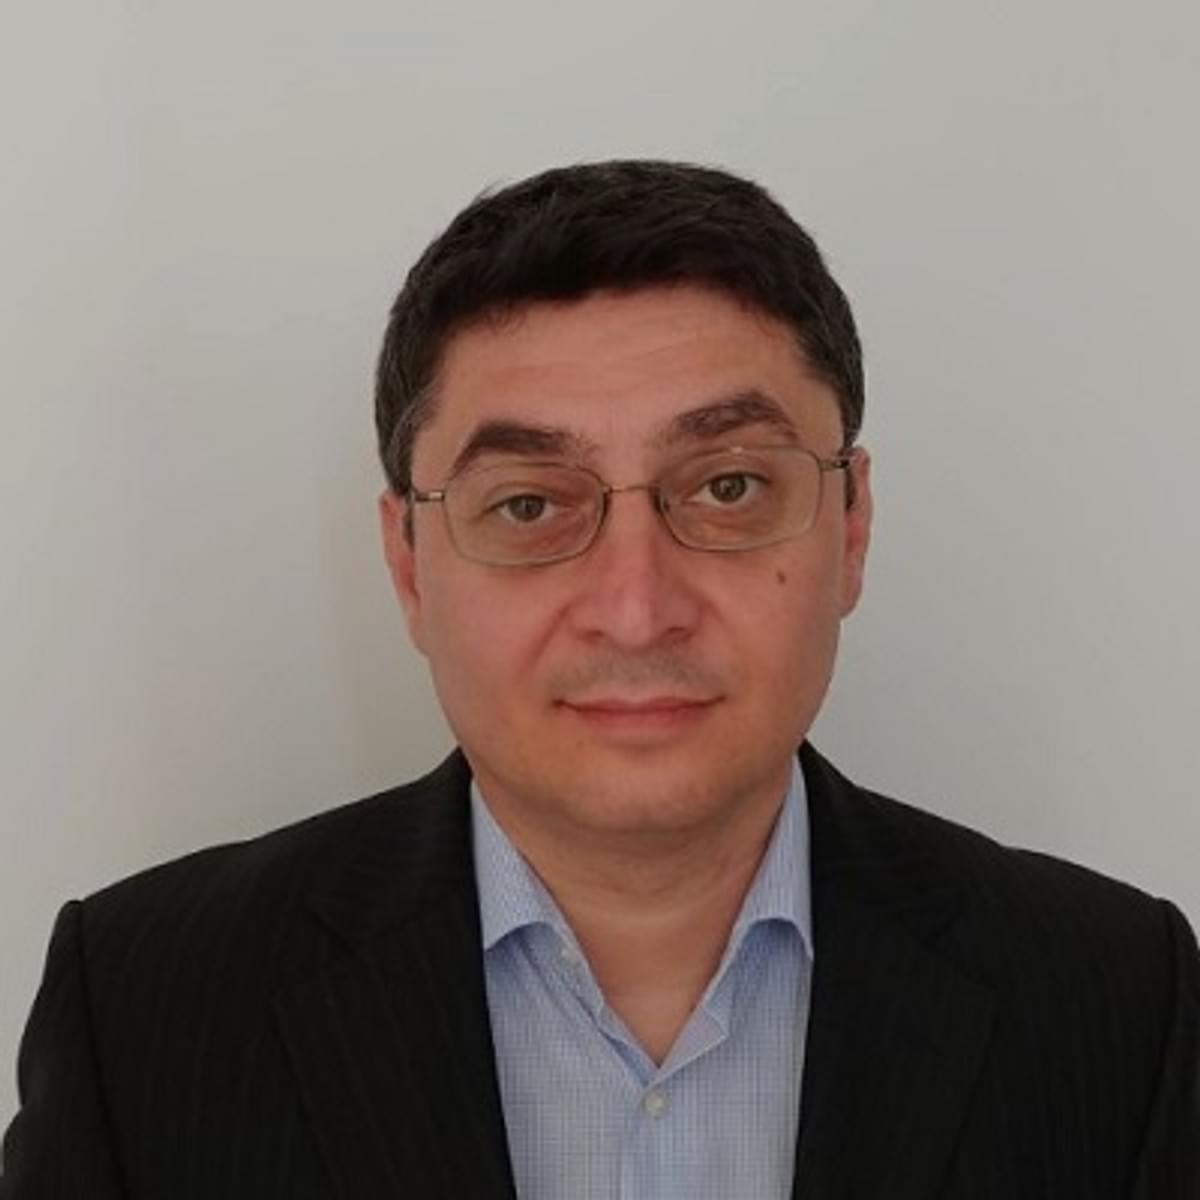 Veysel Altinok aangesteld als Support & Operations Manager bij PeterConnects image